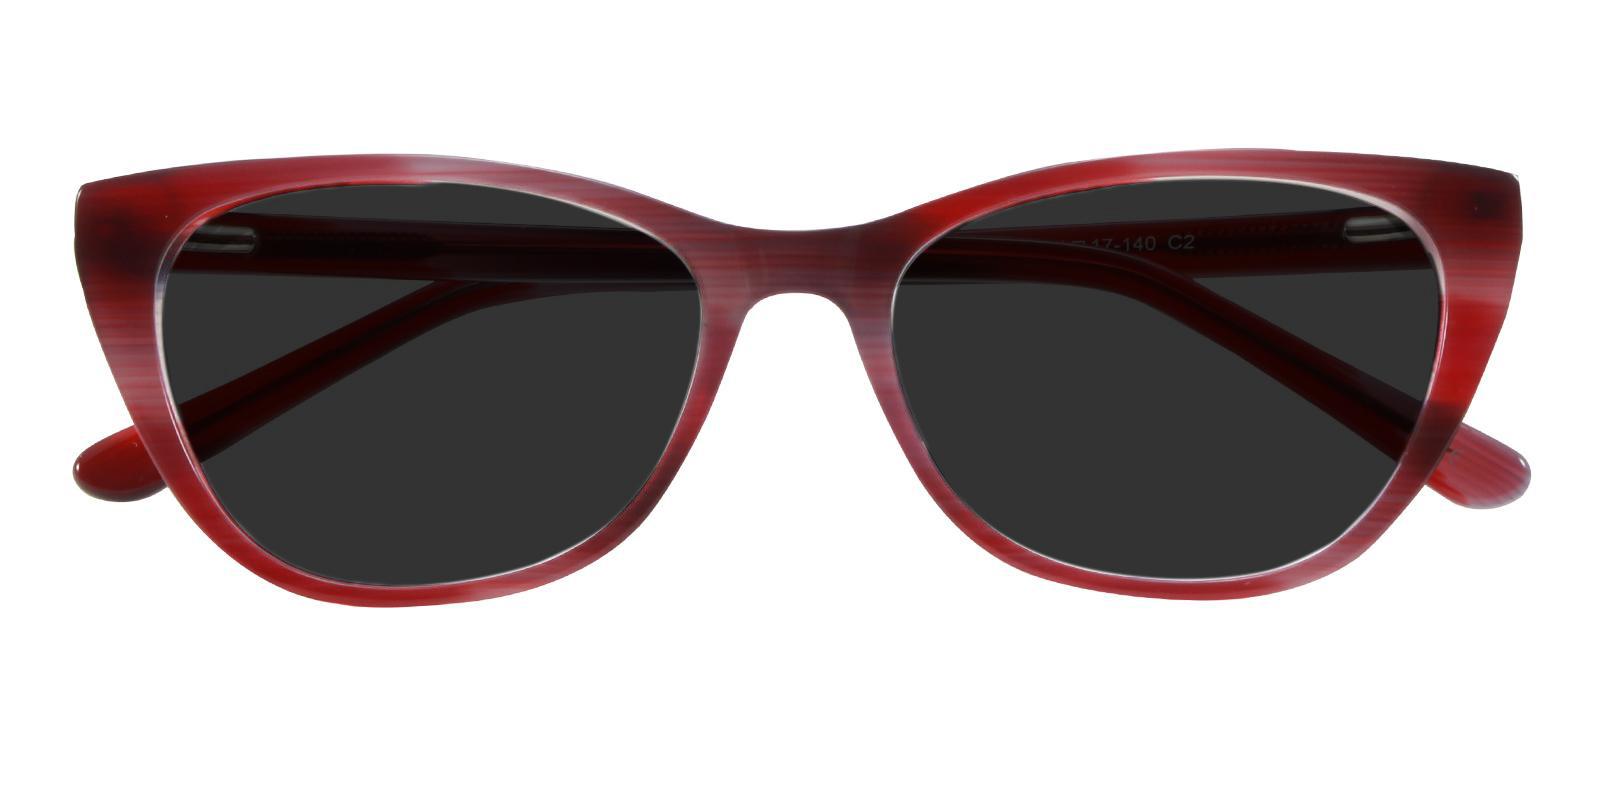 Ledger Red Acetate SpringHinges , Sunglasses , UniversalBridgeFit Frames from ABBE Glasses